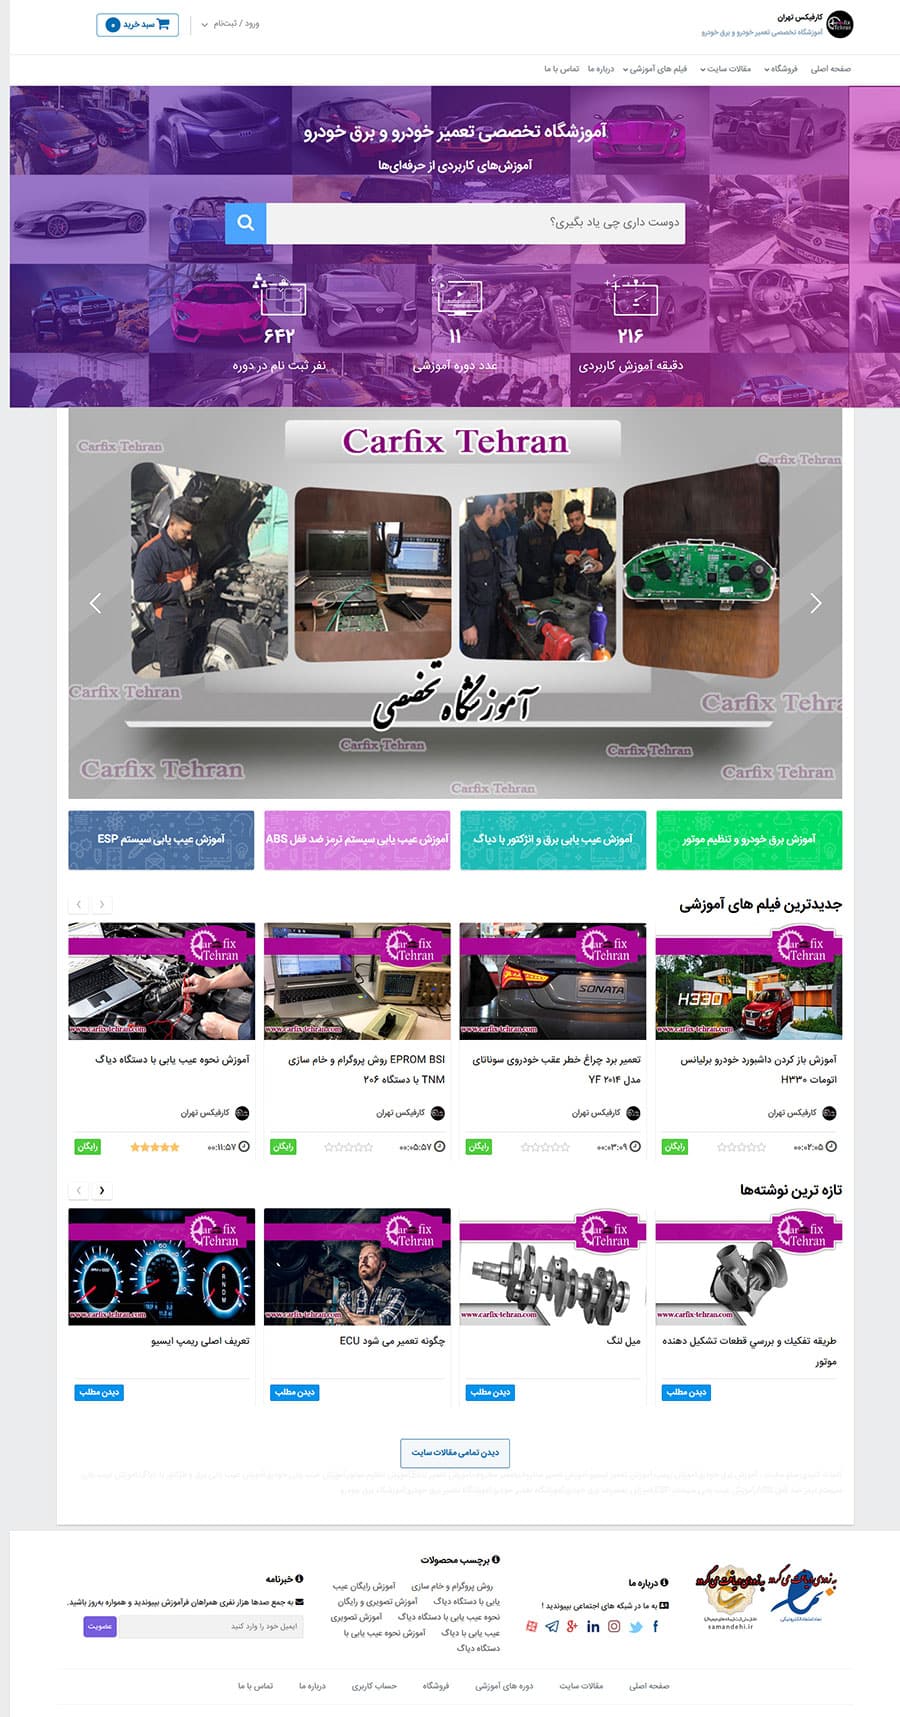 طراحی سایت آموزشگاه کارفیکس تهران